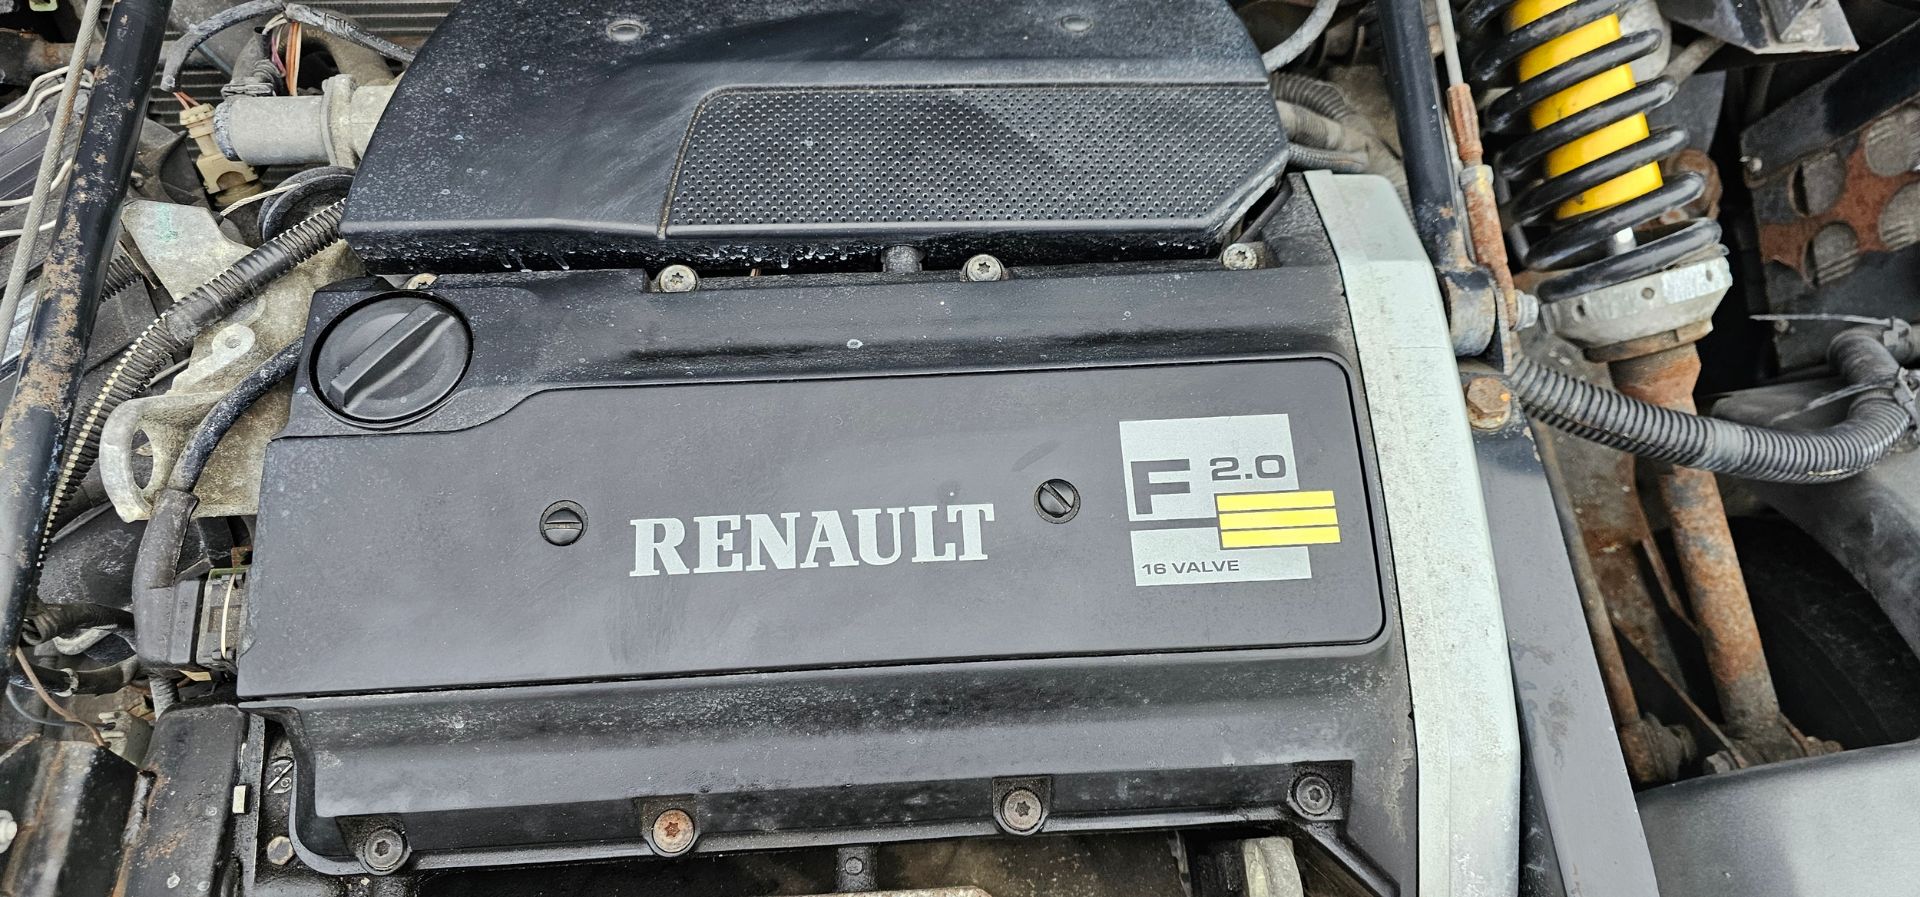 1997 Renault Sport Spider, 1998cc. Registration number P25 OPO. VIN number VMKAF0H0516077070. Engine - Image 26 of 29